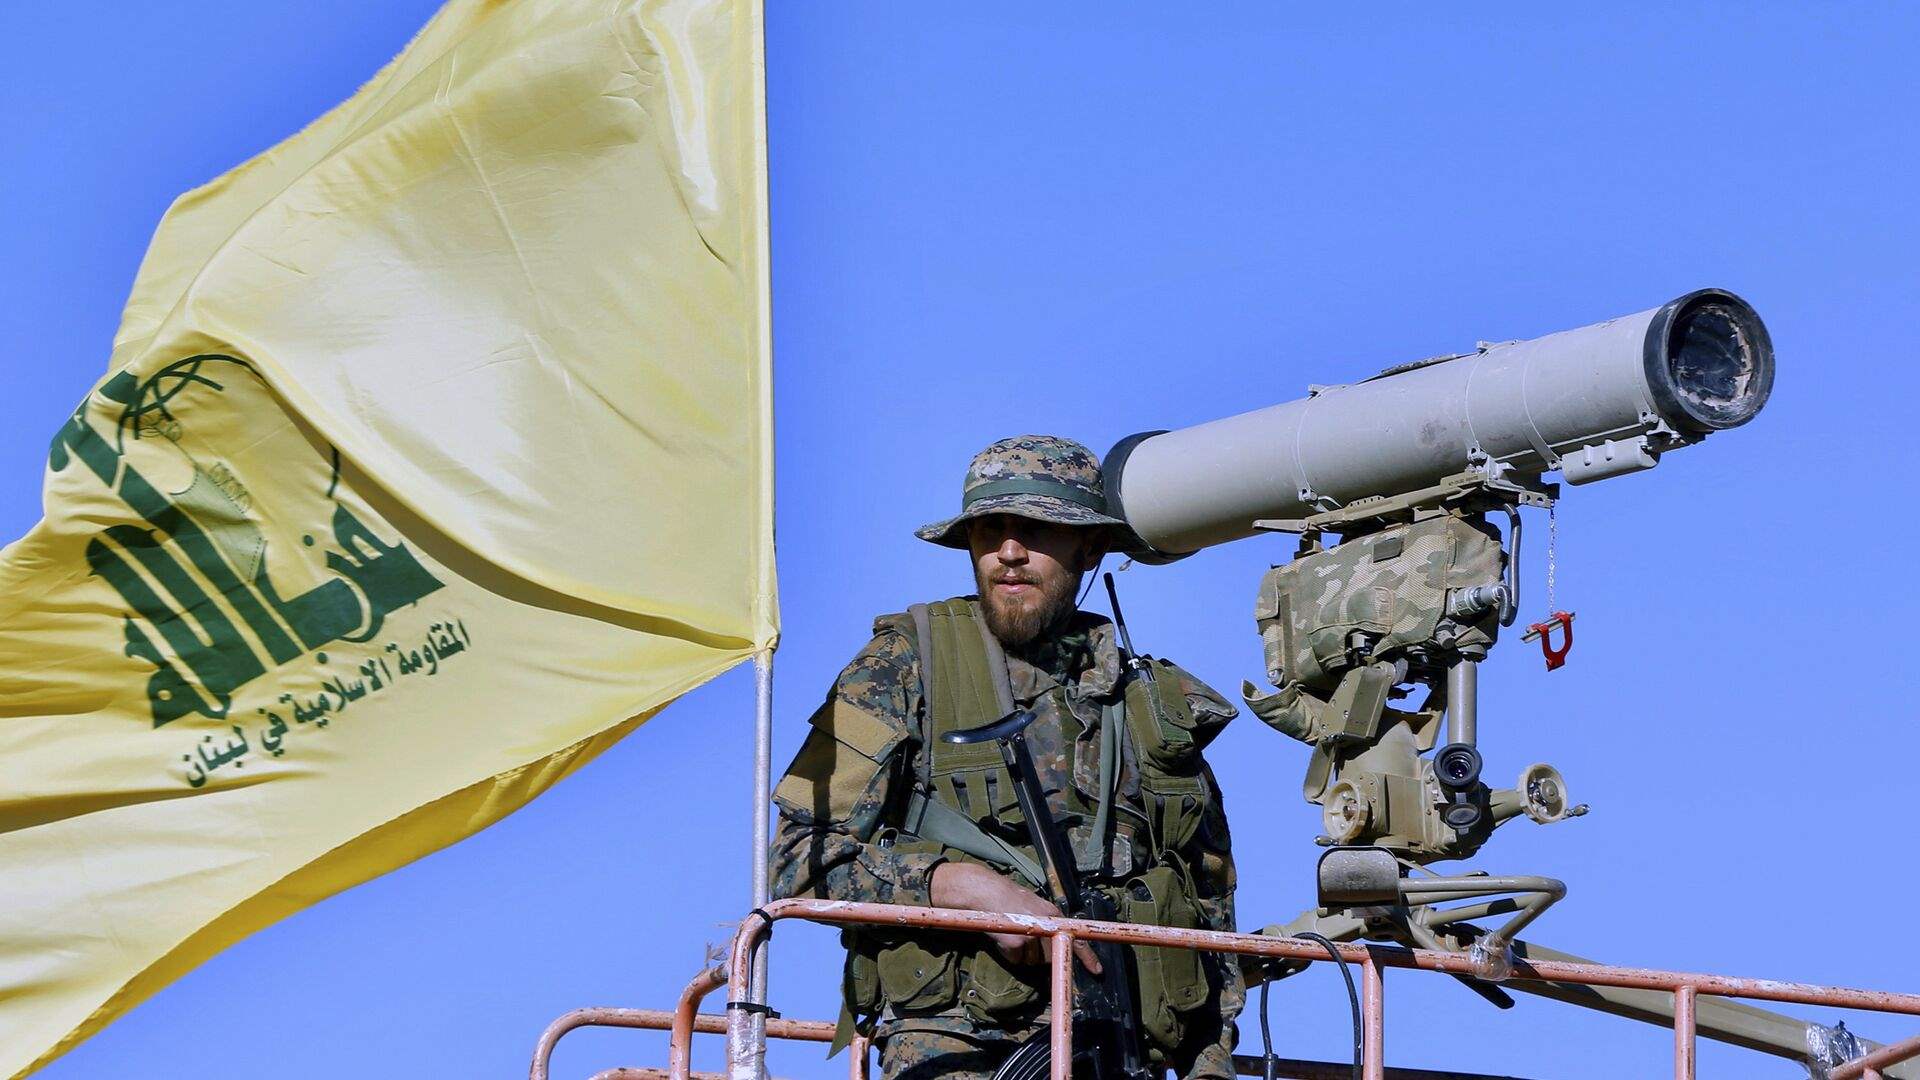 حزب الله: إستهدفنا ثكنة ‏يفتاح بالأسلحة المناسبة وحققنا فيها إصابات مباشرة